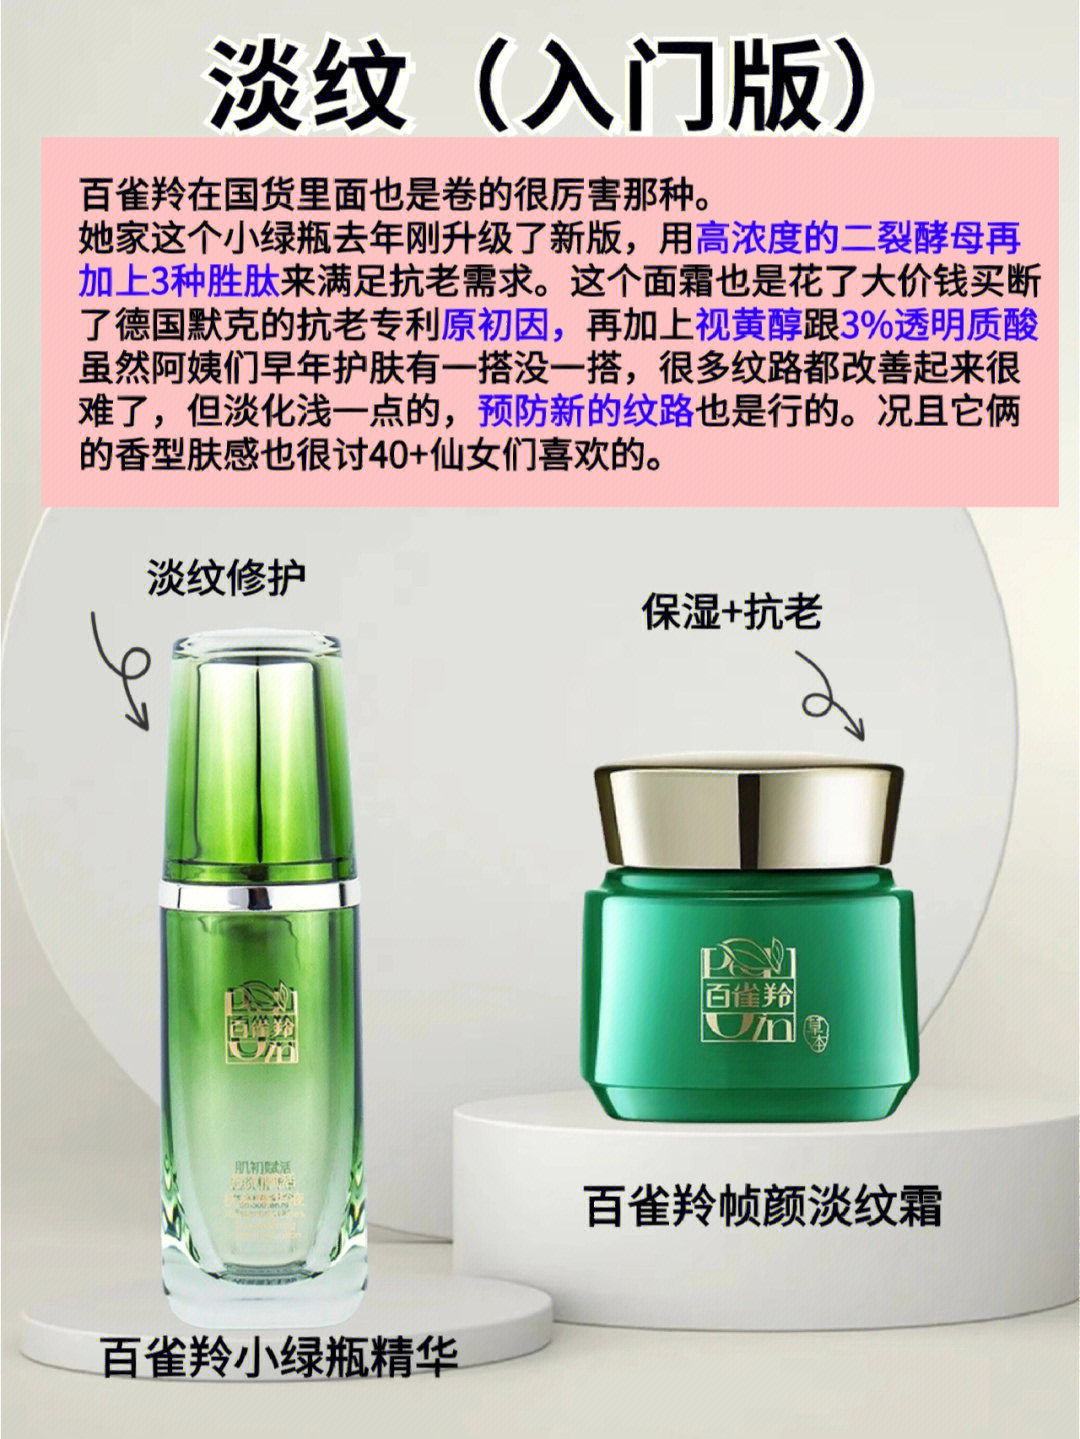 40款最佳护肤品化妆品包装设计欣赏-尚略广告-上海化妆品包装设计公司